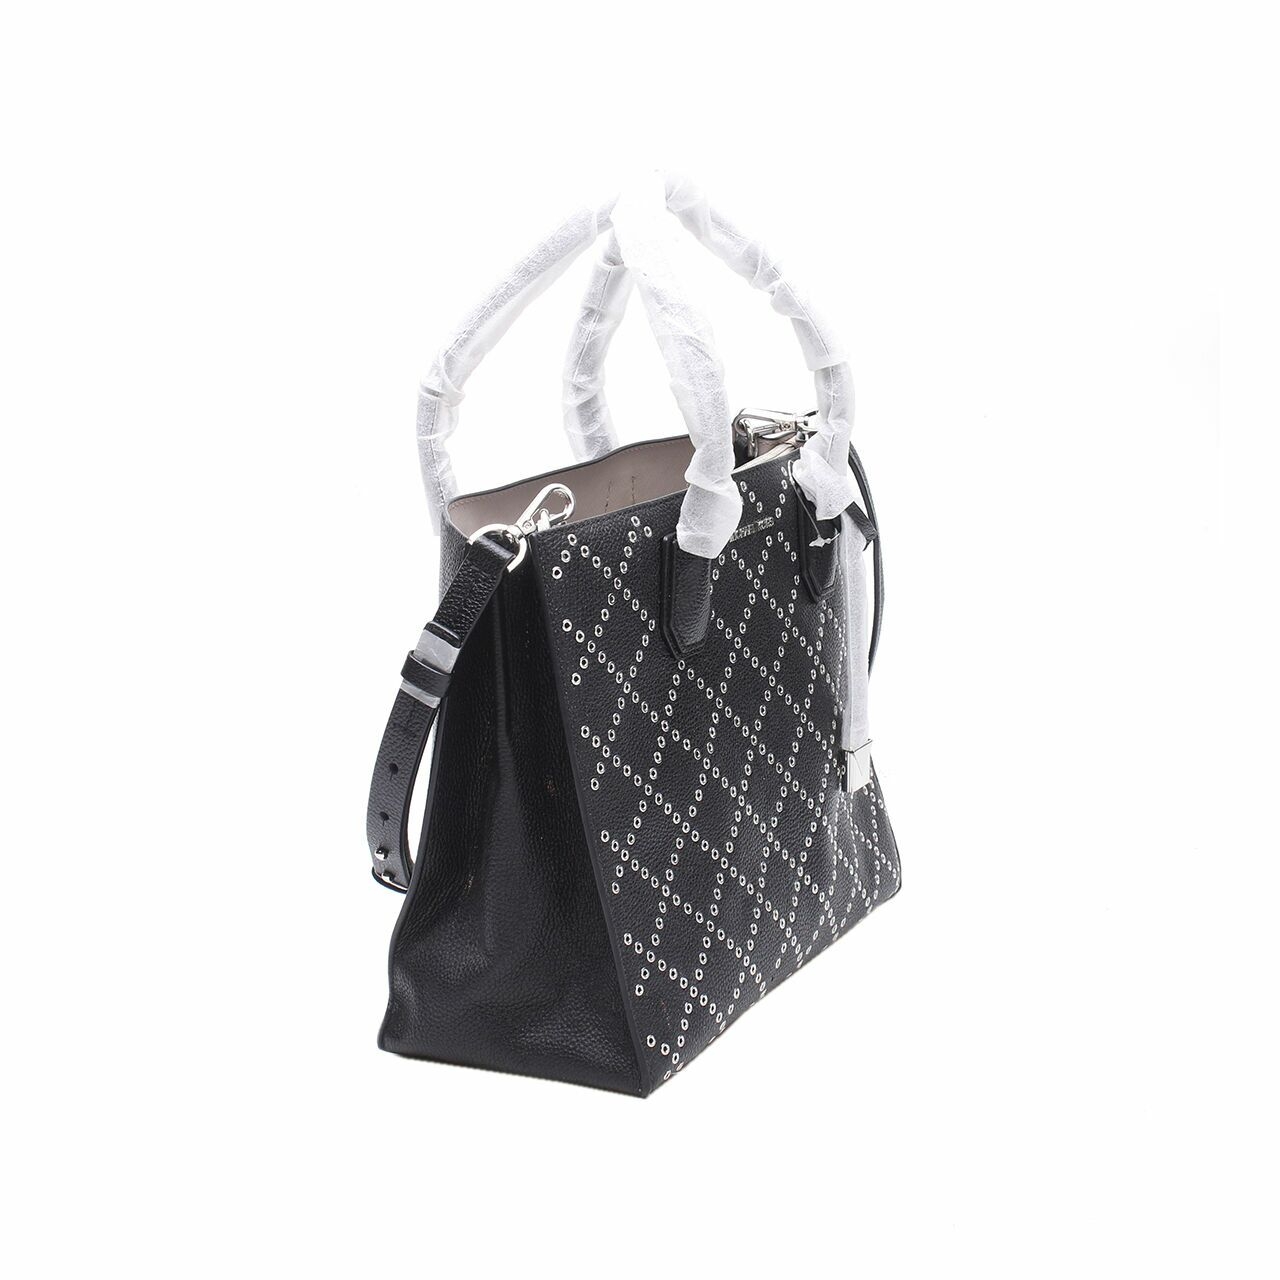 Michael Kors Mercer Studded Grommet Convertible Black Satchel Bag